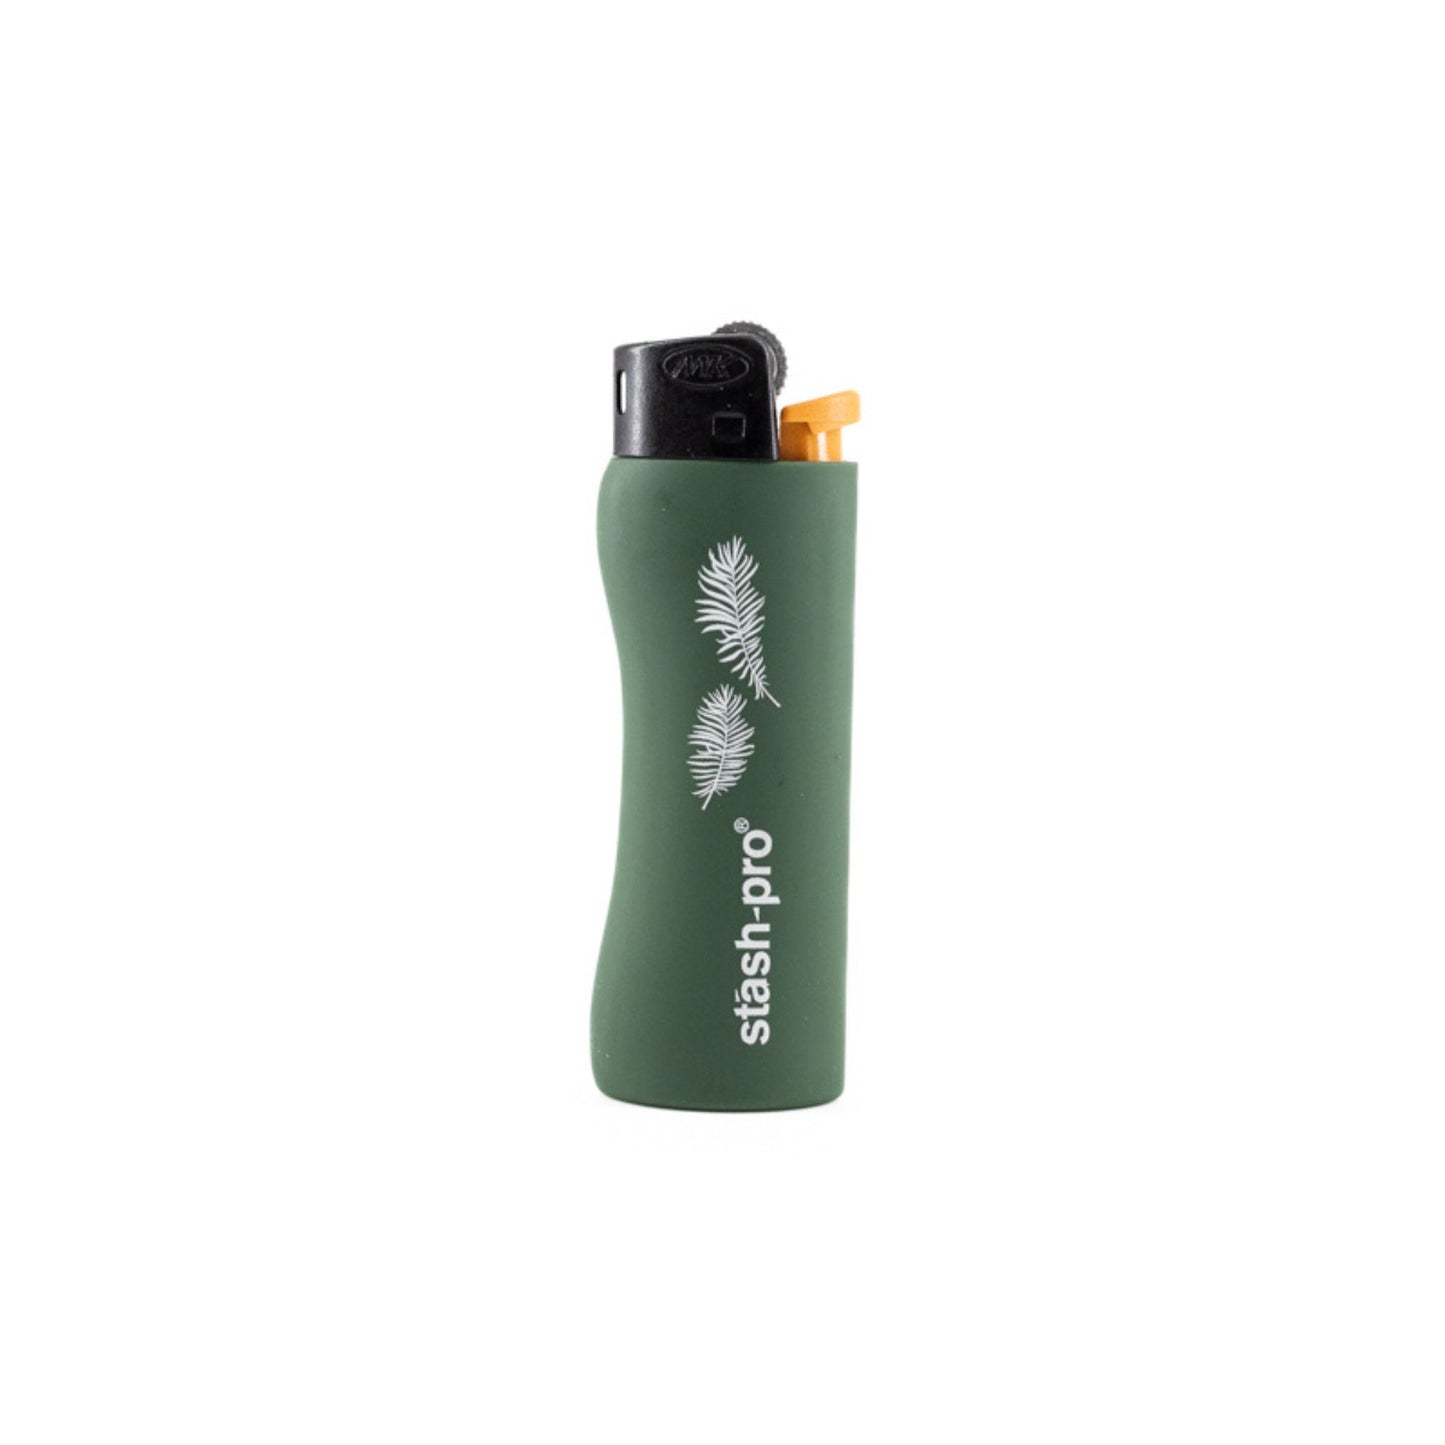 Stash-Pro Pocket Lighter Dark Green